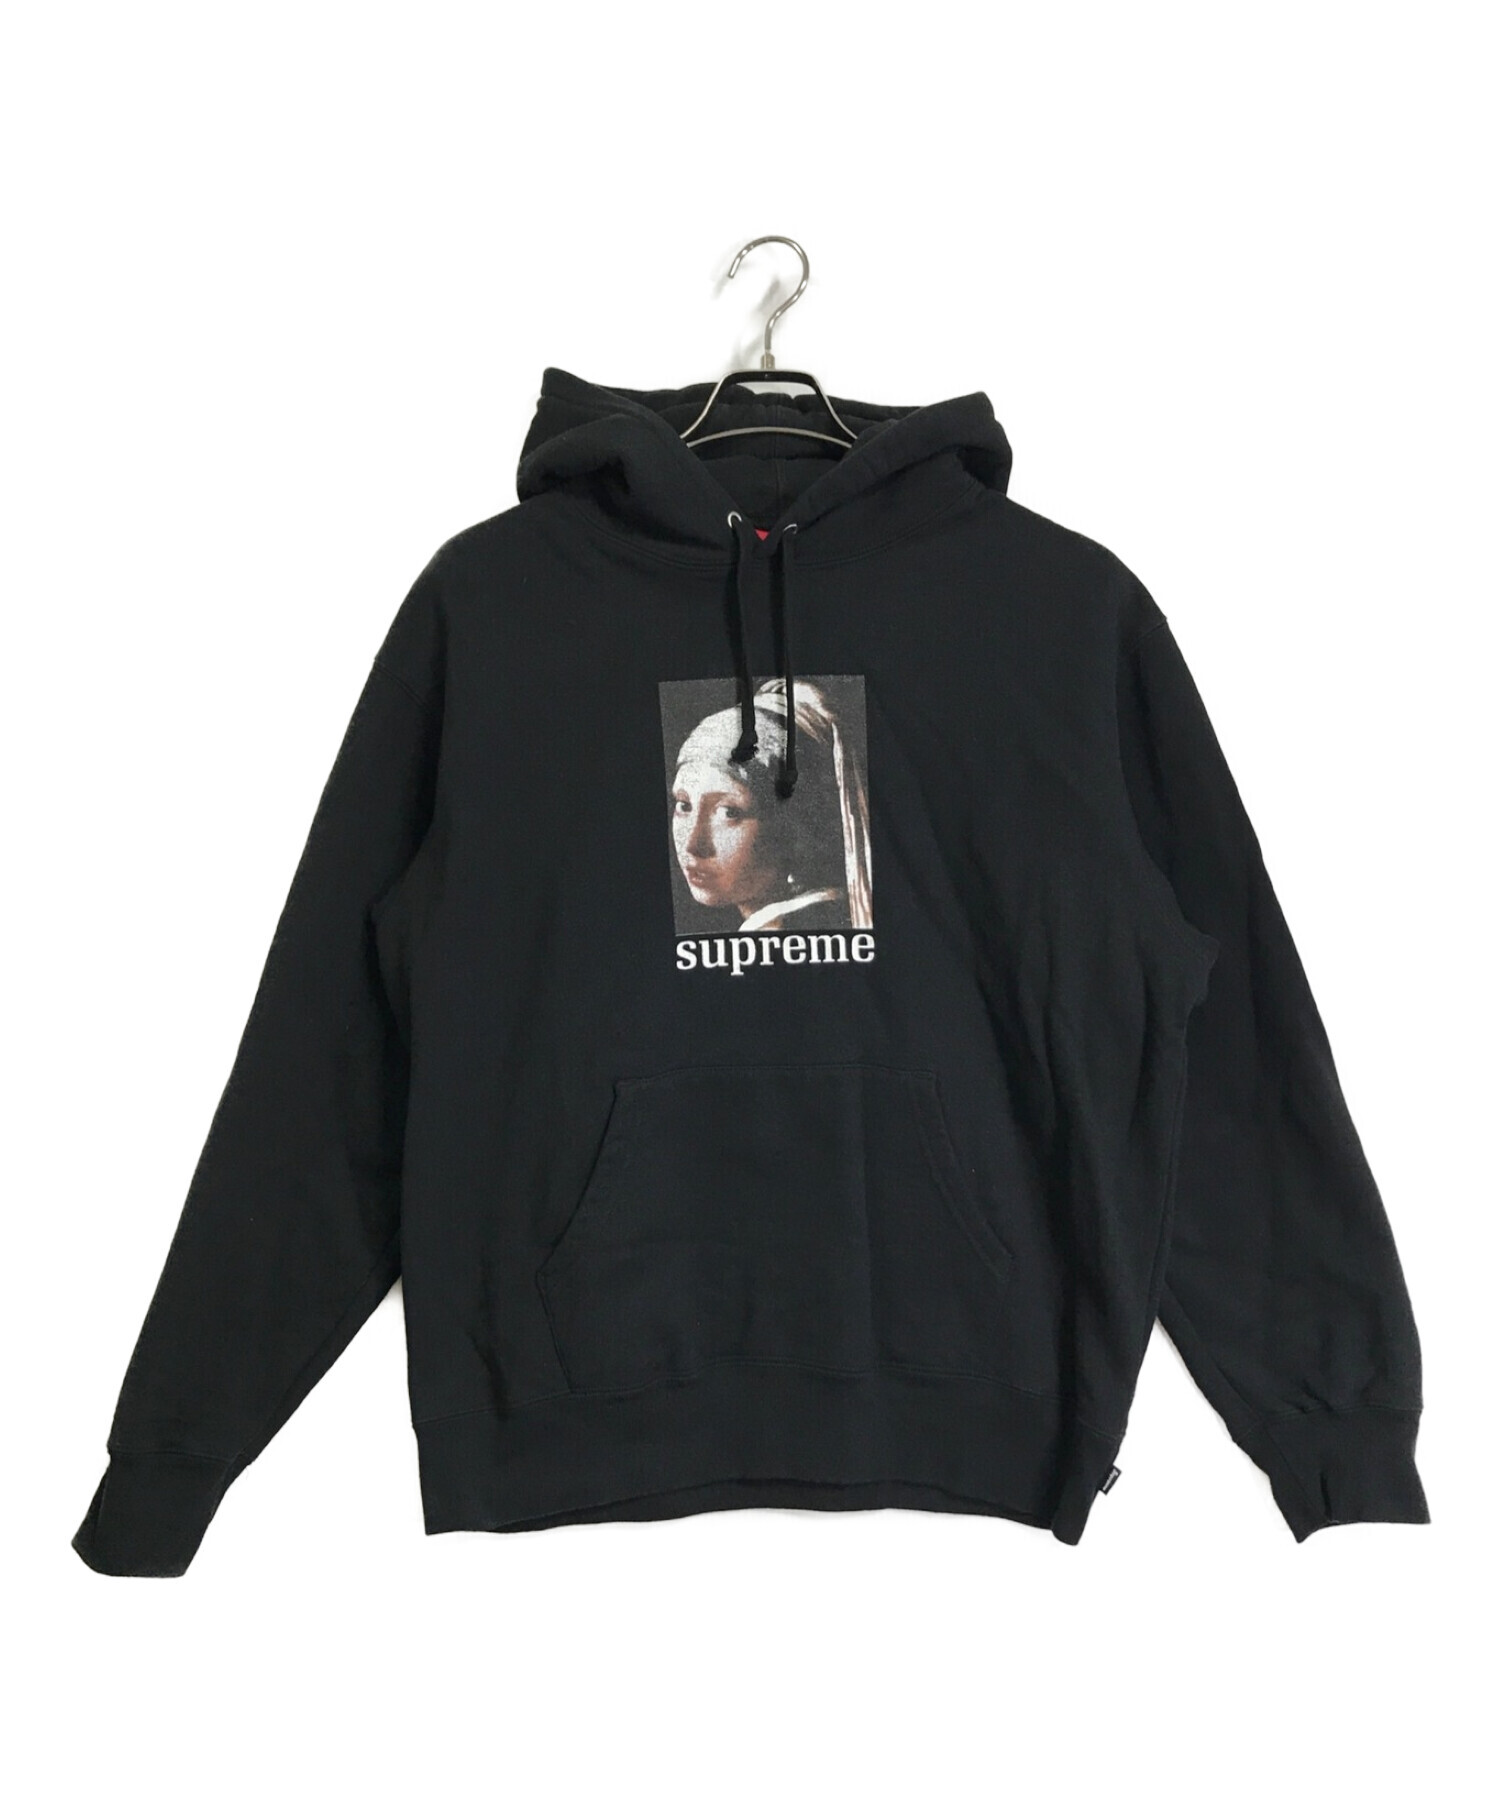 Supreme (シュプリーム) Pearl Hooded Sweatshirt ブラック サイズ:M